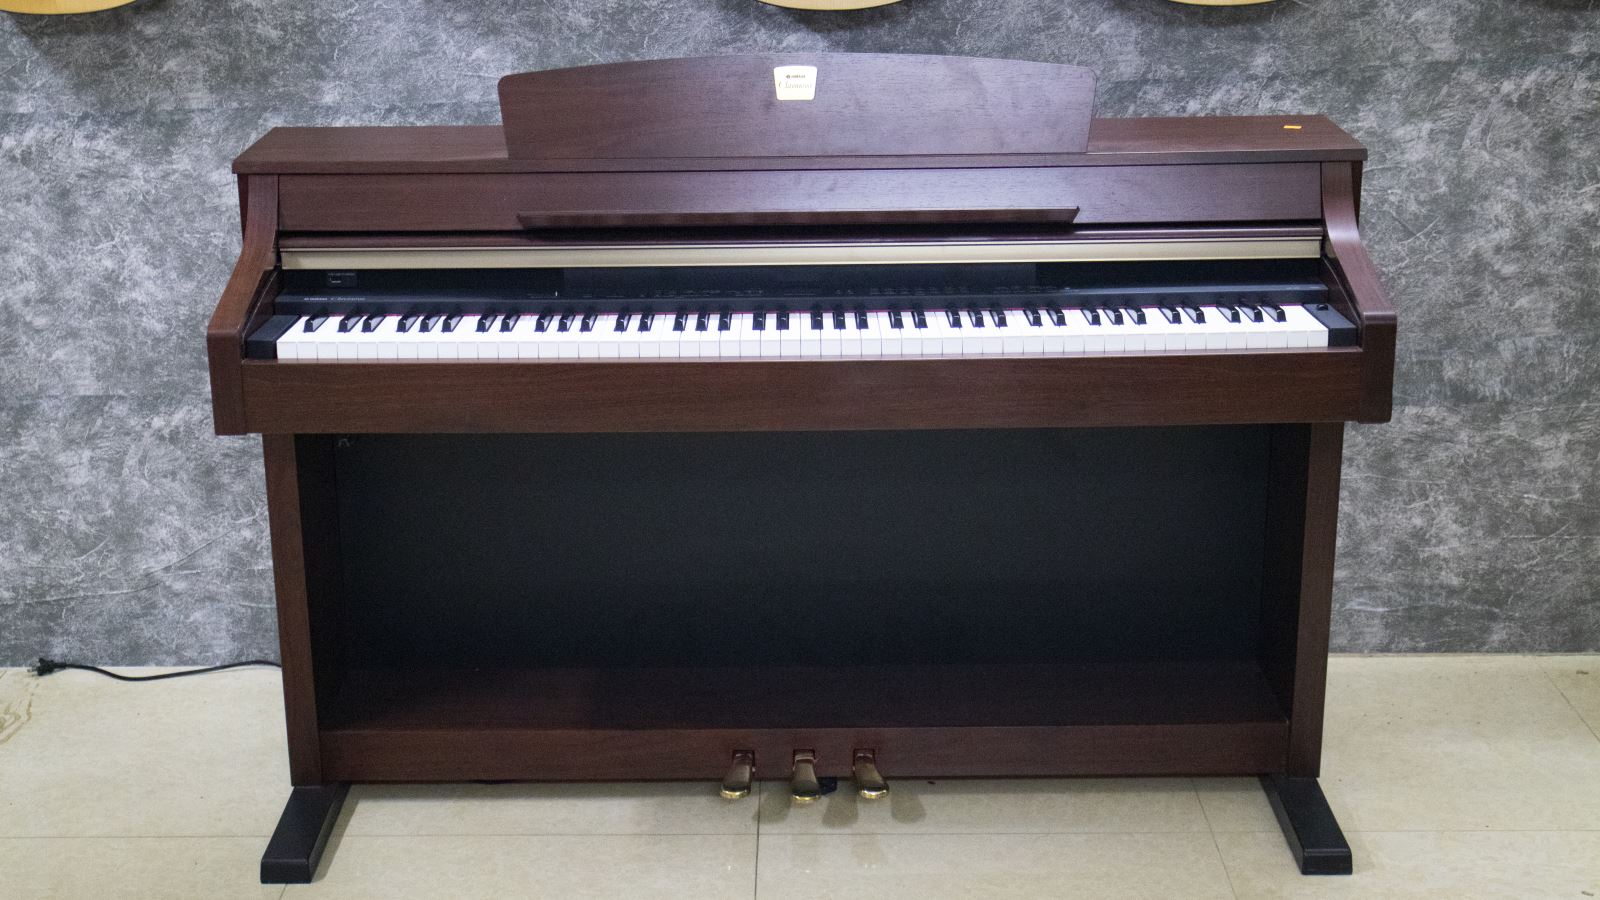 đàn piano điện yamaha clp-330